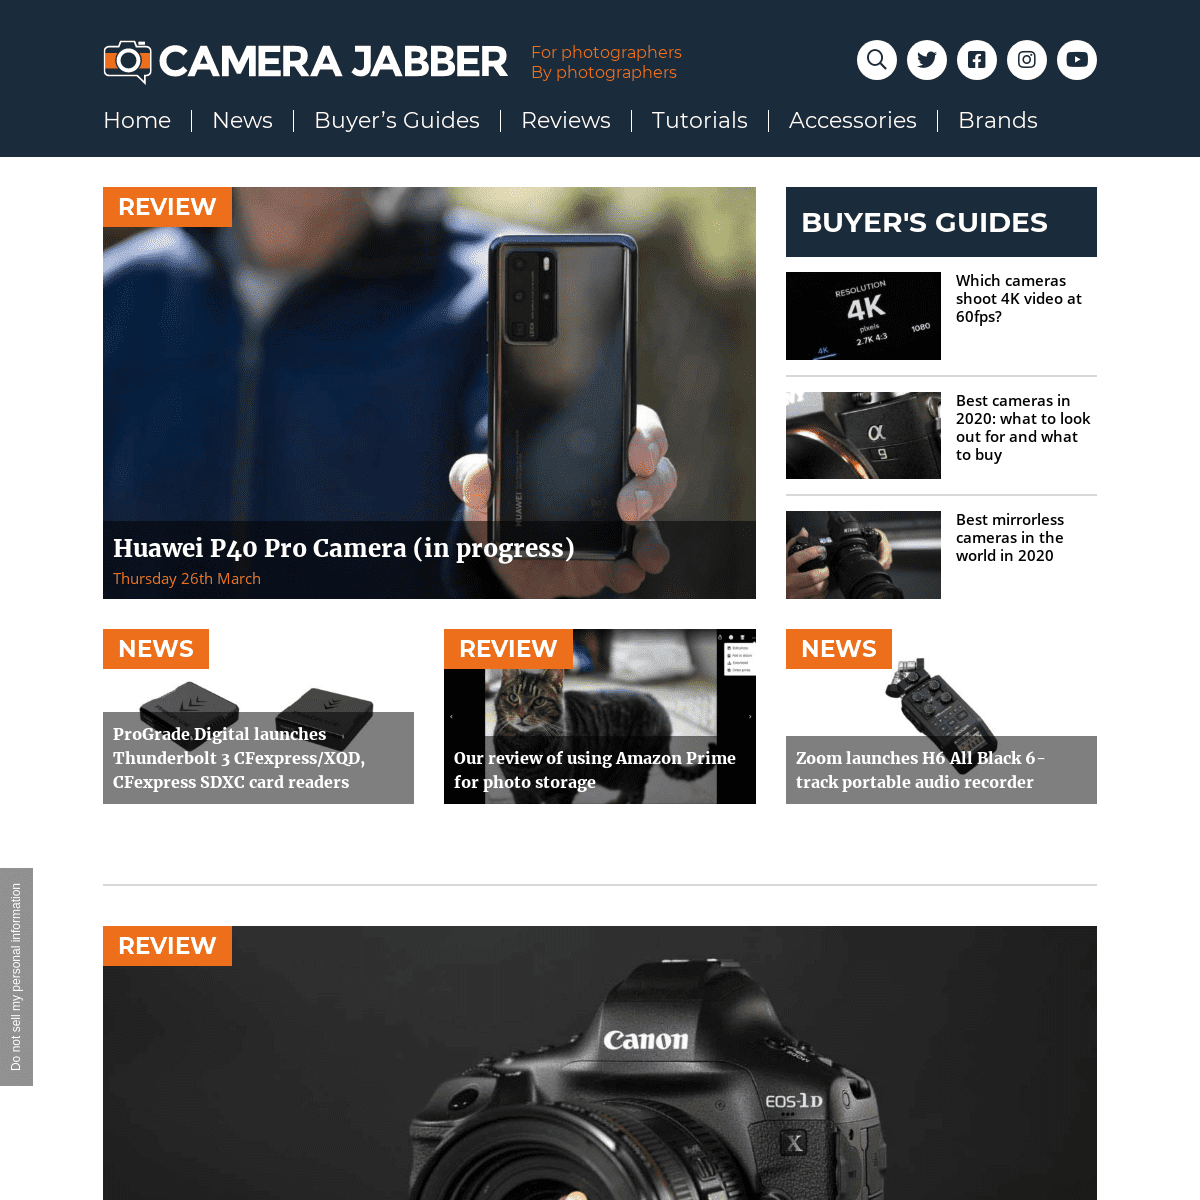 A complete backup of camerajabber.com